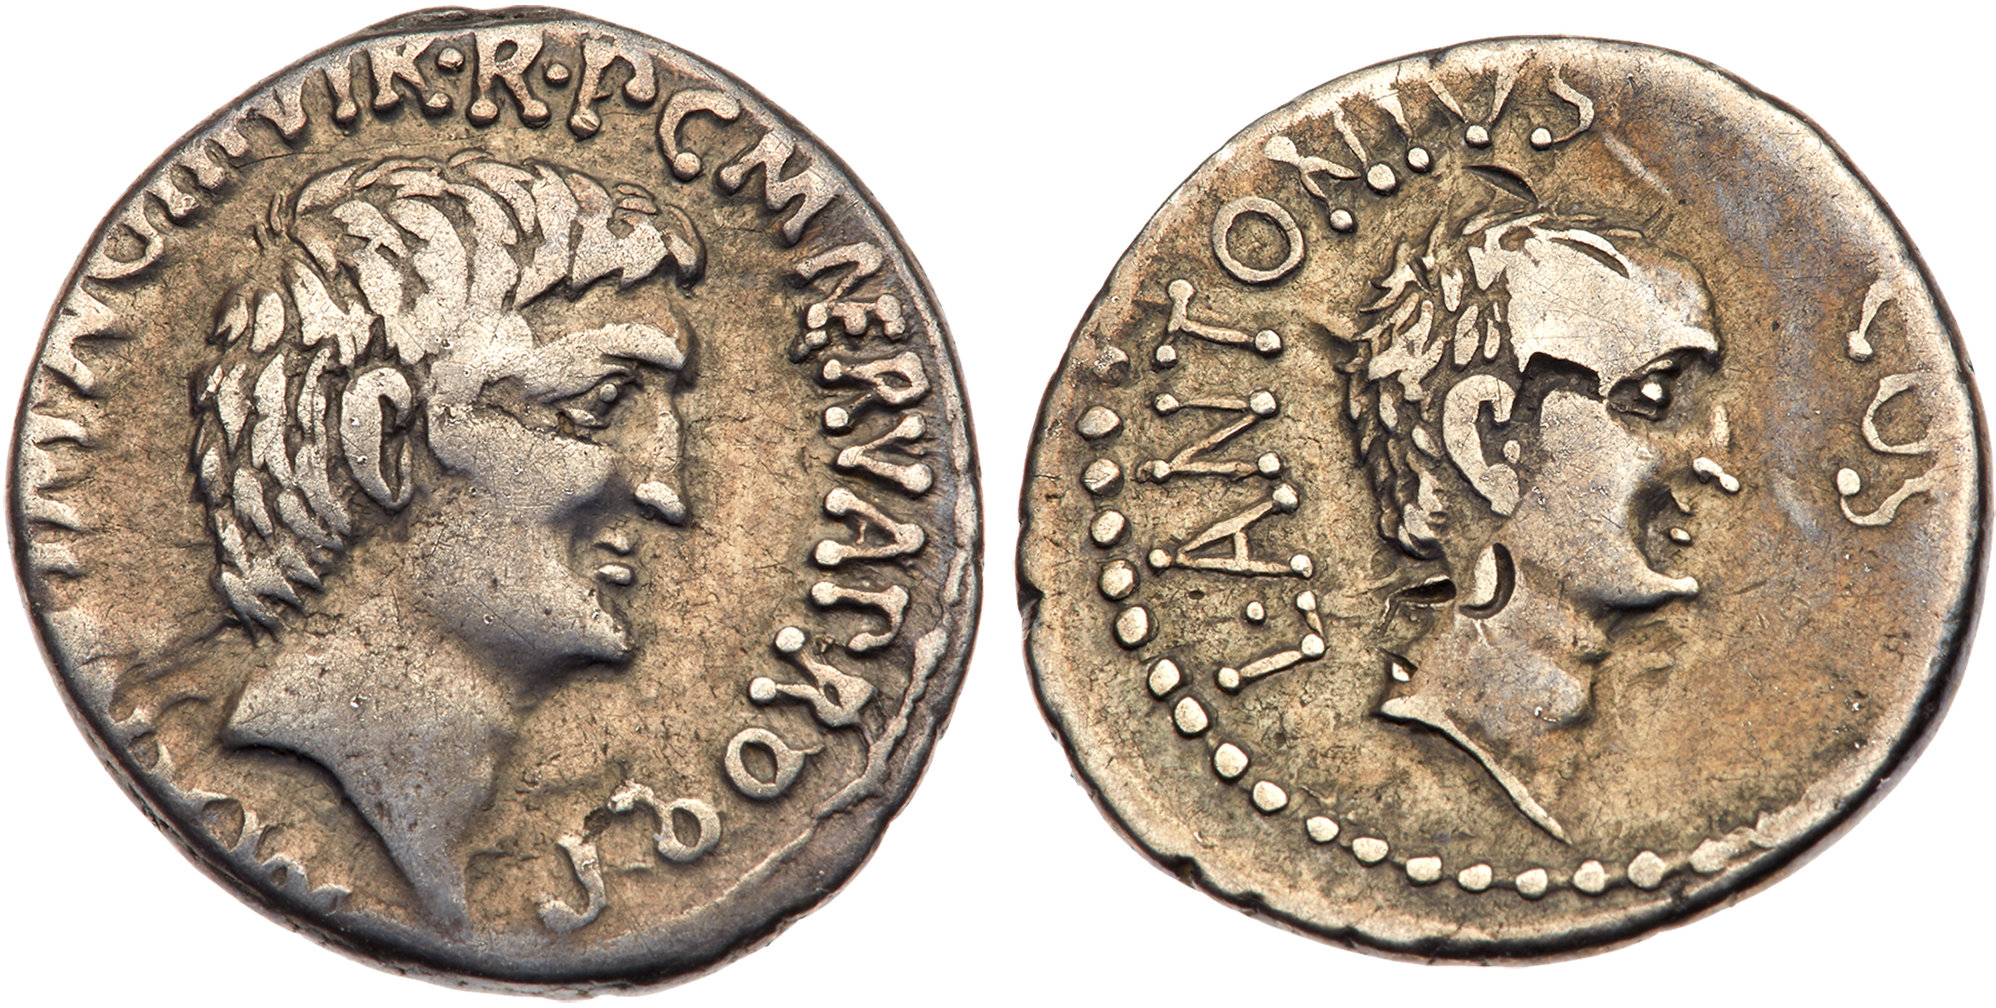 דינר כסף משנת 41 לפסה"נ, עליו מוטבעת דמותו של מרקוס אנטוניוס